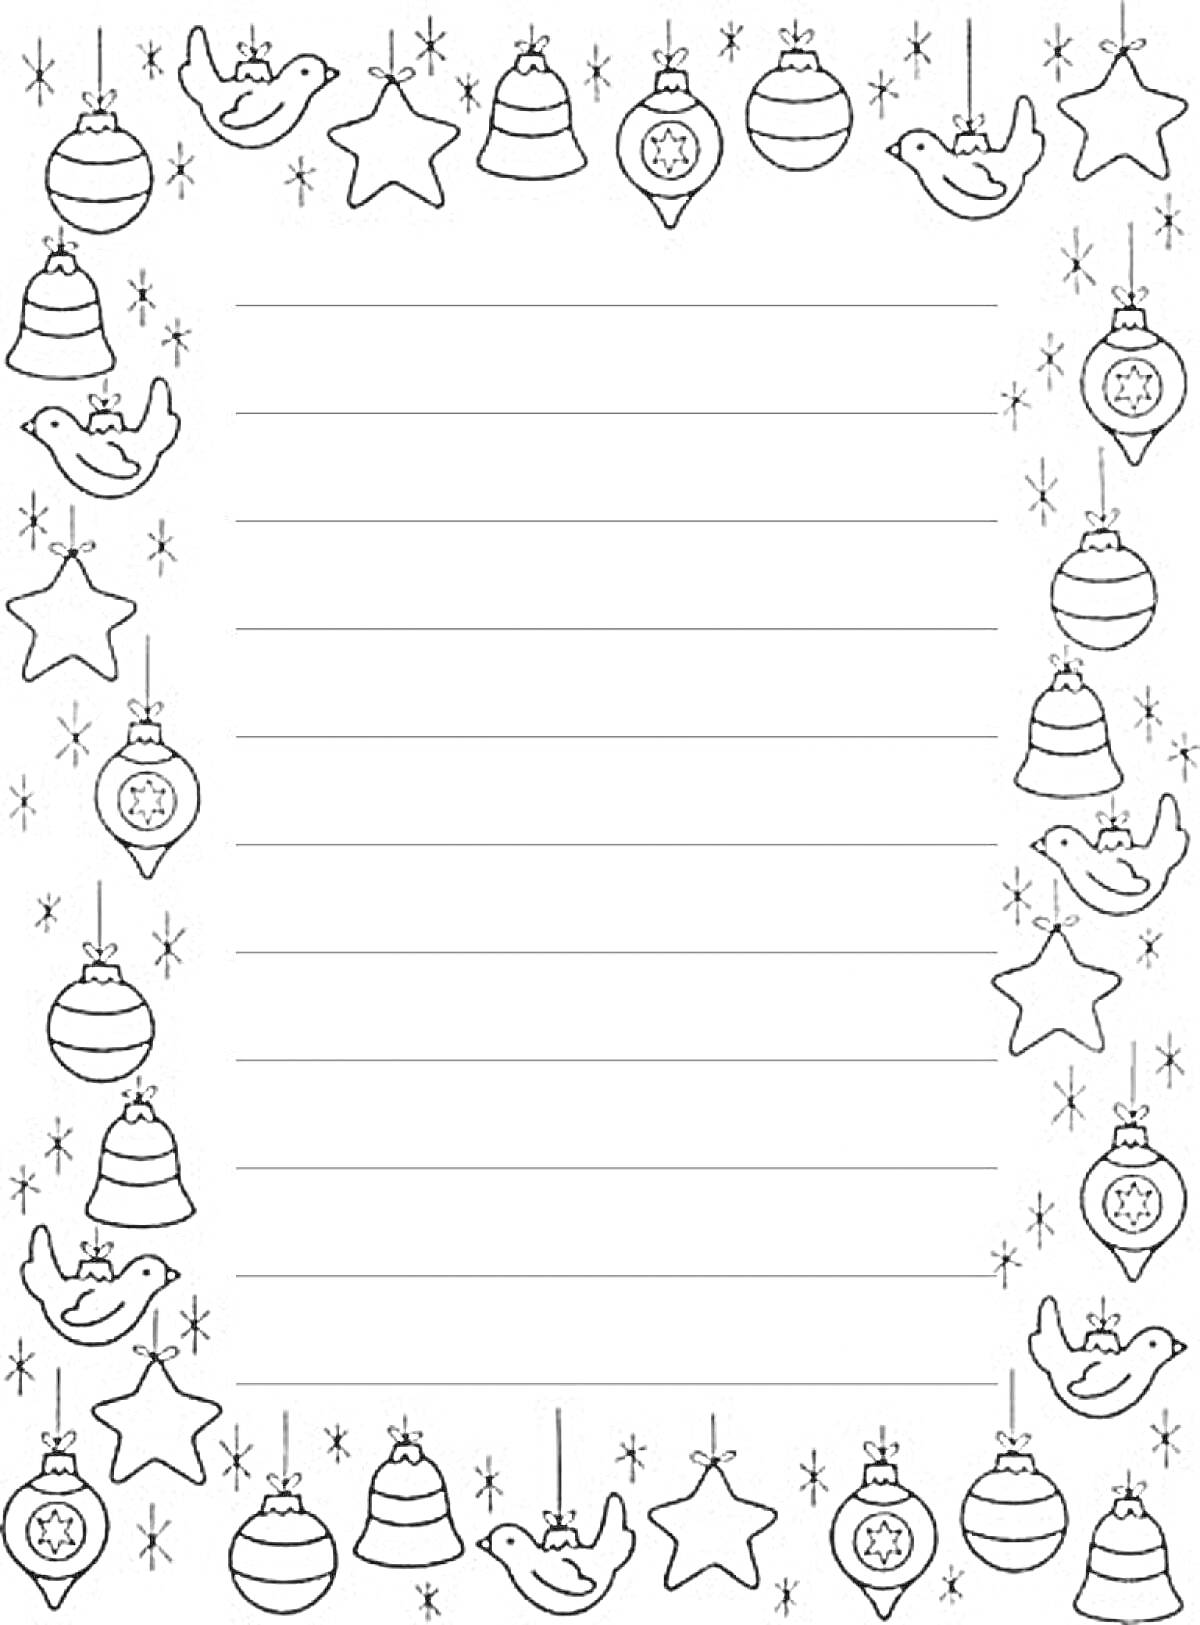 Раскраска Новогодняя рамка с украшениями, звездами, шарами, колокольчиками и птичками